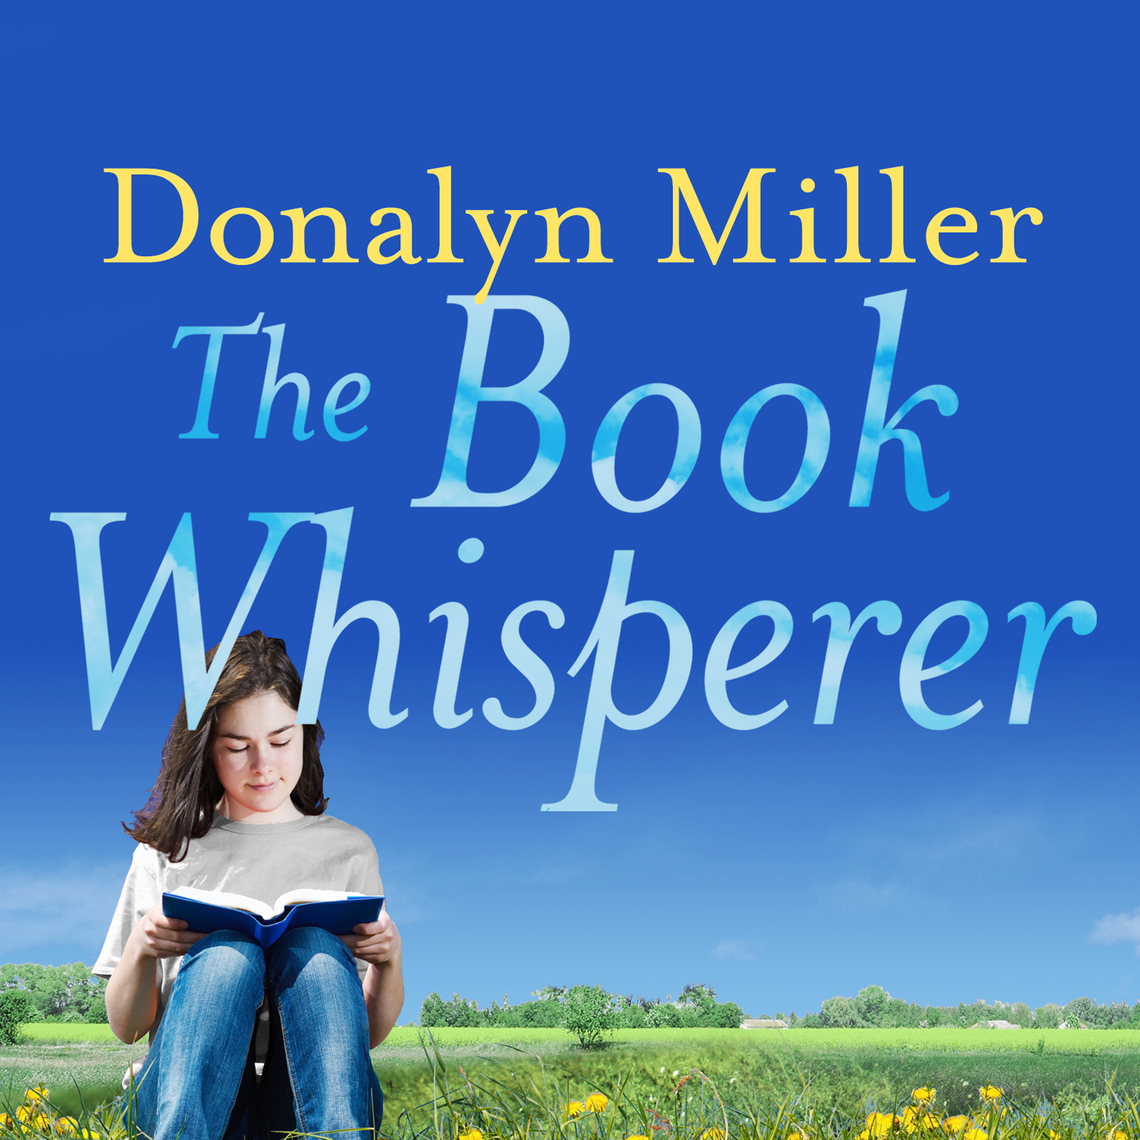 Whisperer　The　Book　Miller　Audiobook　by　Donalyn　Scribd